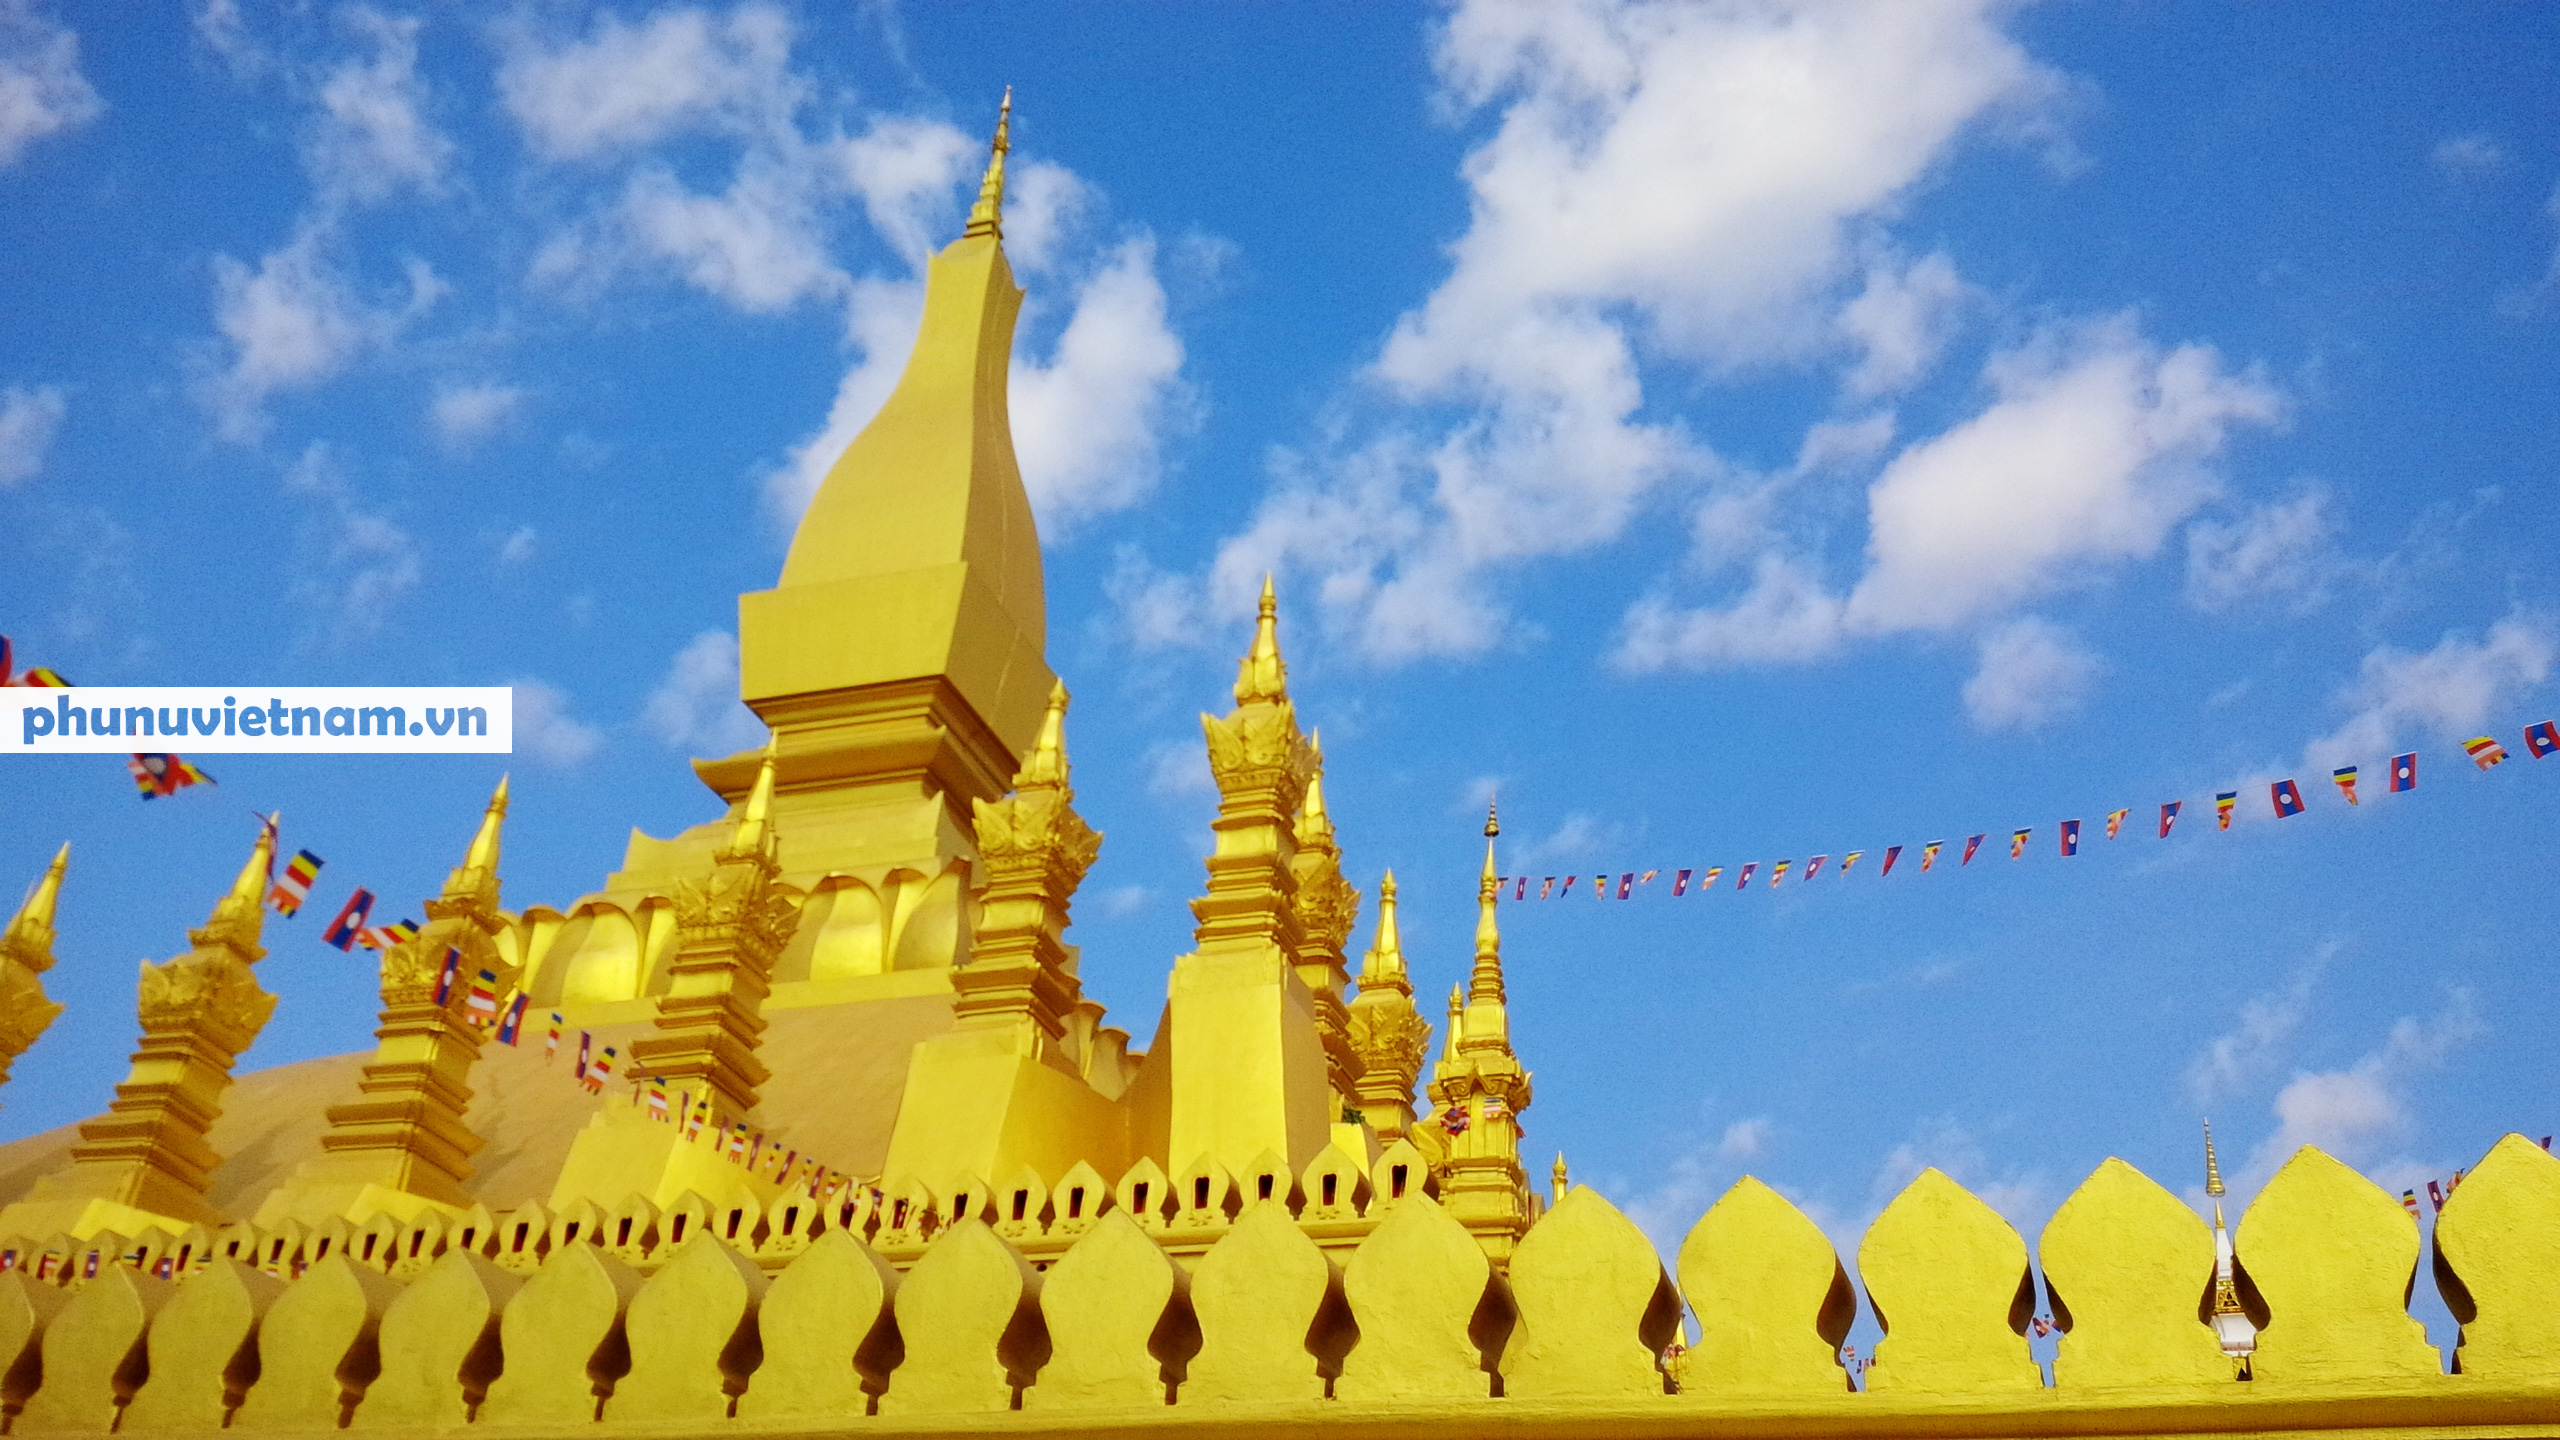 Chiêm ngưỡng ngôi tháp vàng lớn nhất của Lào, gần 500 tuổi tráng lệ giữa đất trời - Ảnh 12.